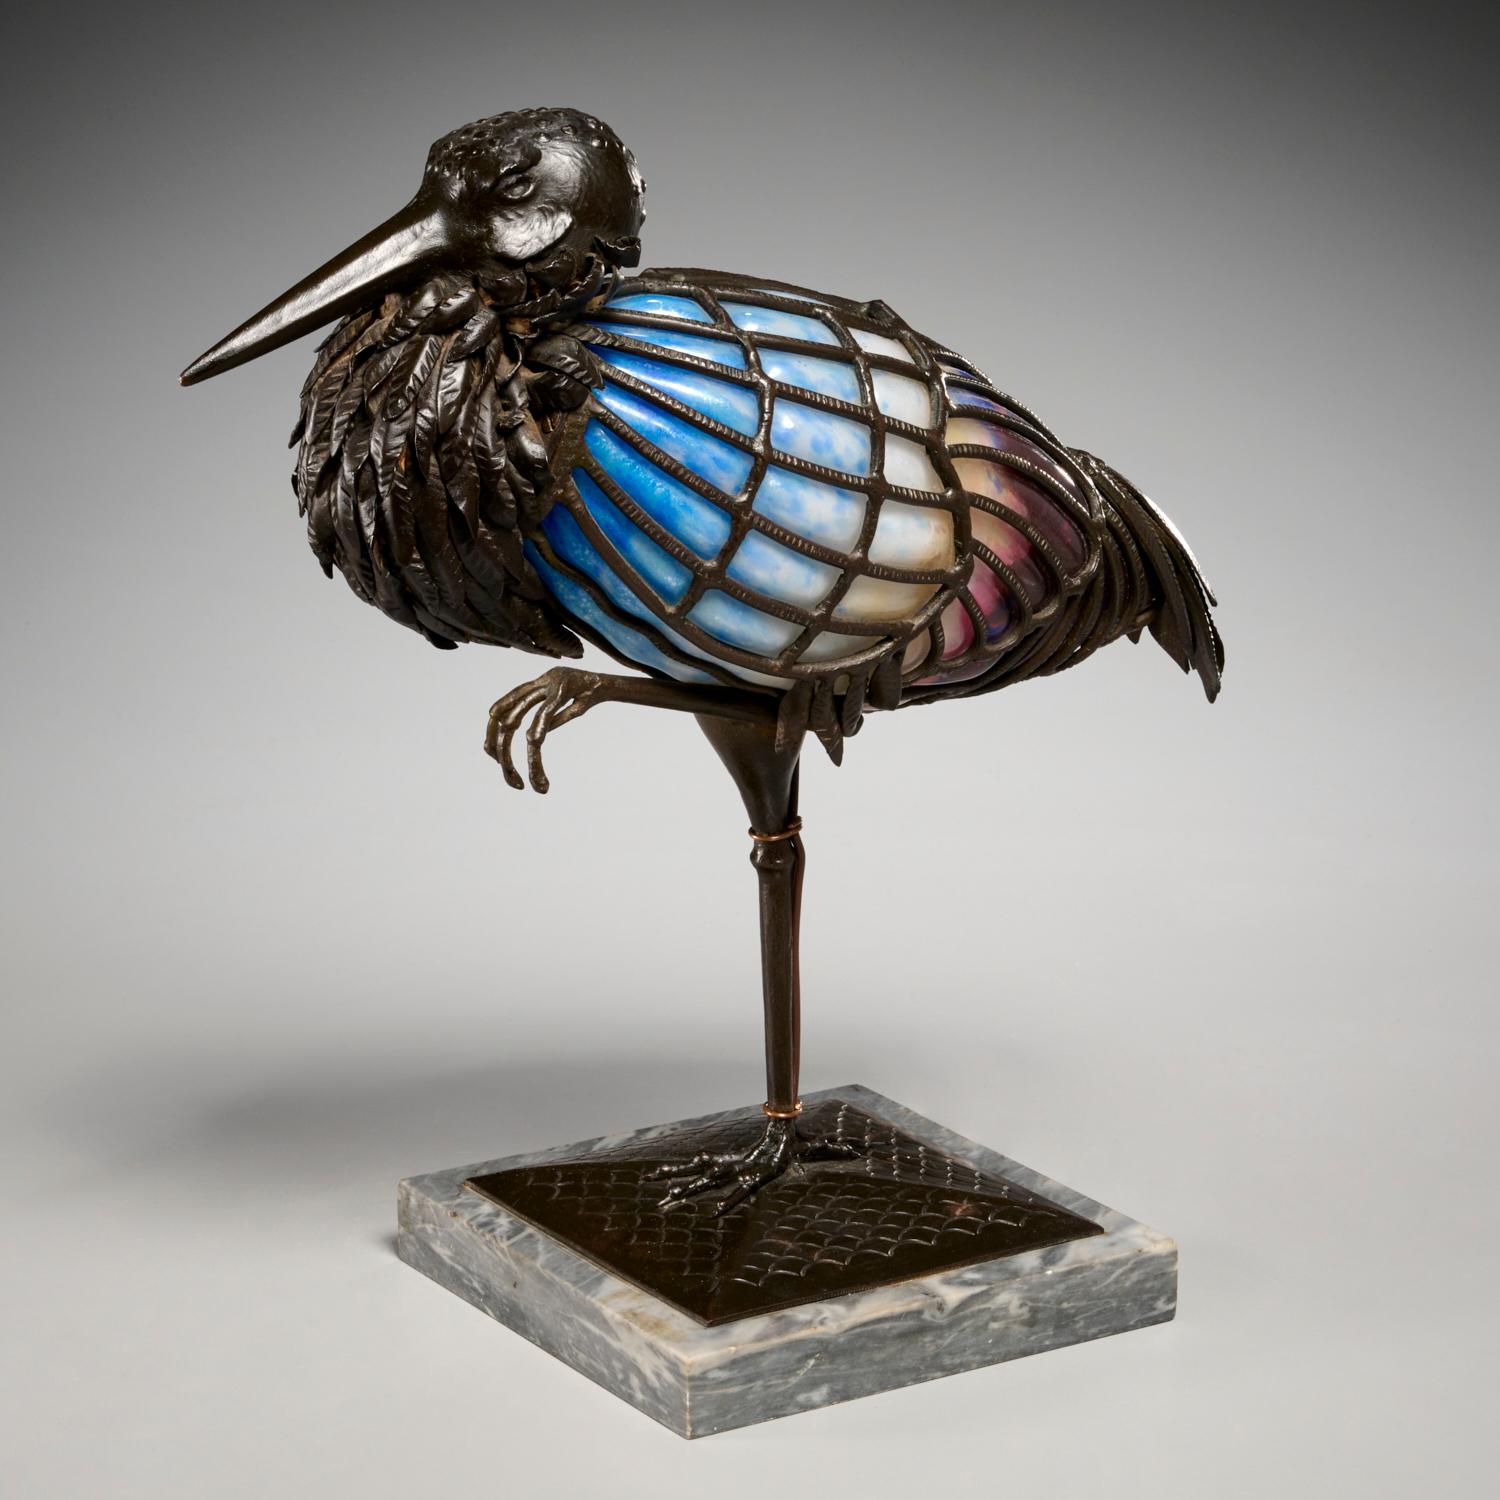 Rare lampe sculpturale en verre d'art et fer forgé de Muller-Frères, représentant un oiseau cigogne debout sur une patte. Cette lampe sculpturale est finement travaillée avec un oiseau sculpté en fer forgé martelé patiné brun, inséré dans un verre